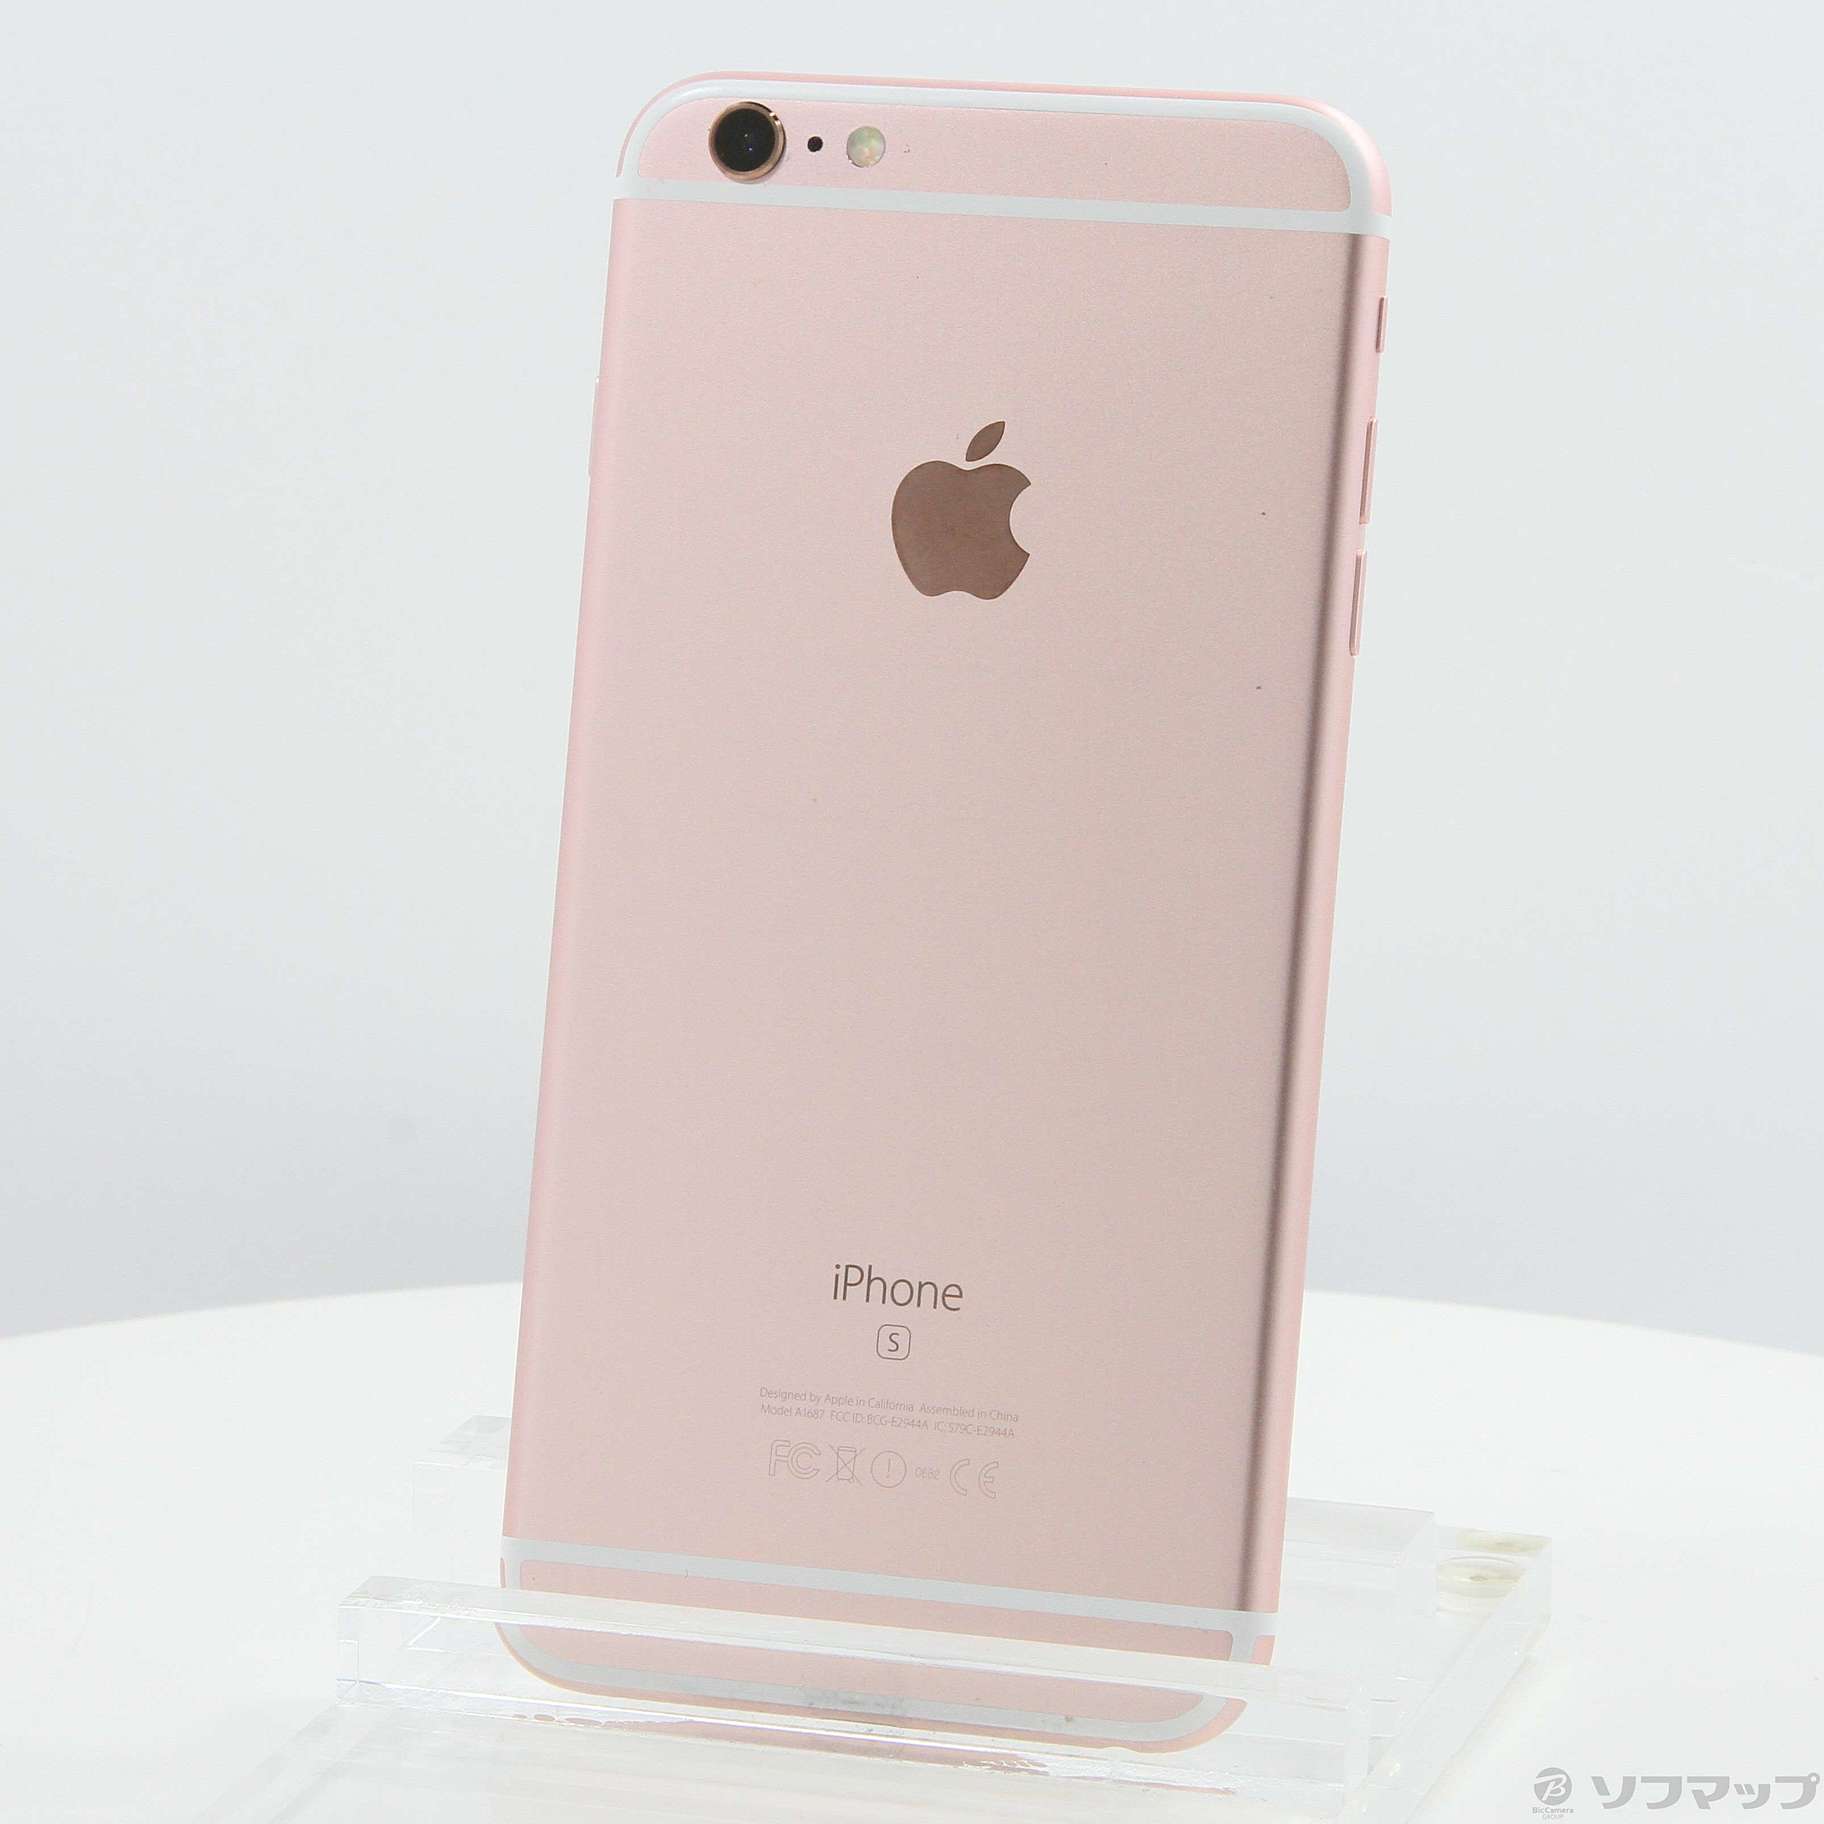 iPhone 6s ローズゴールド 16GB - 携帯電話